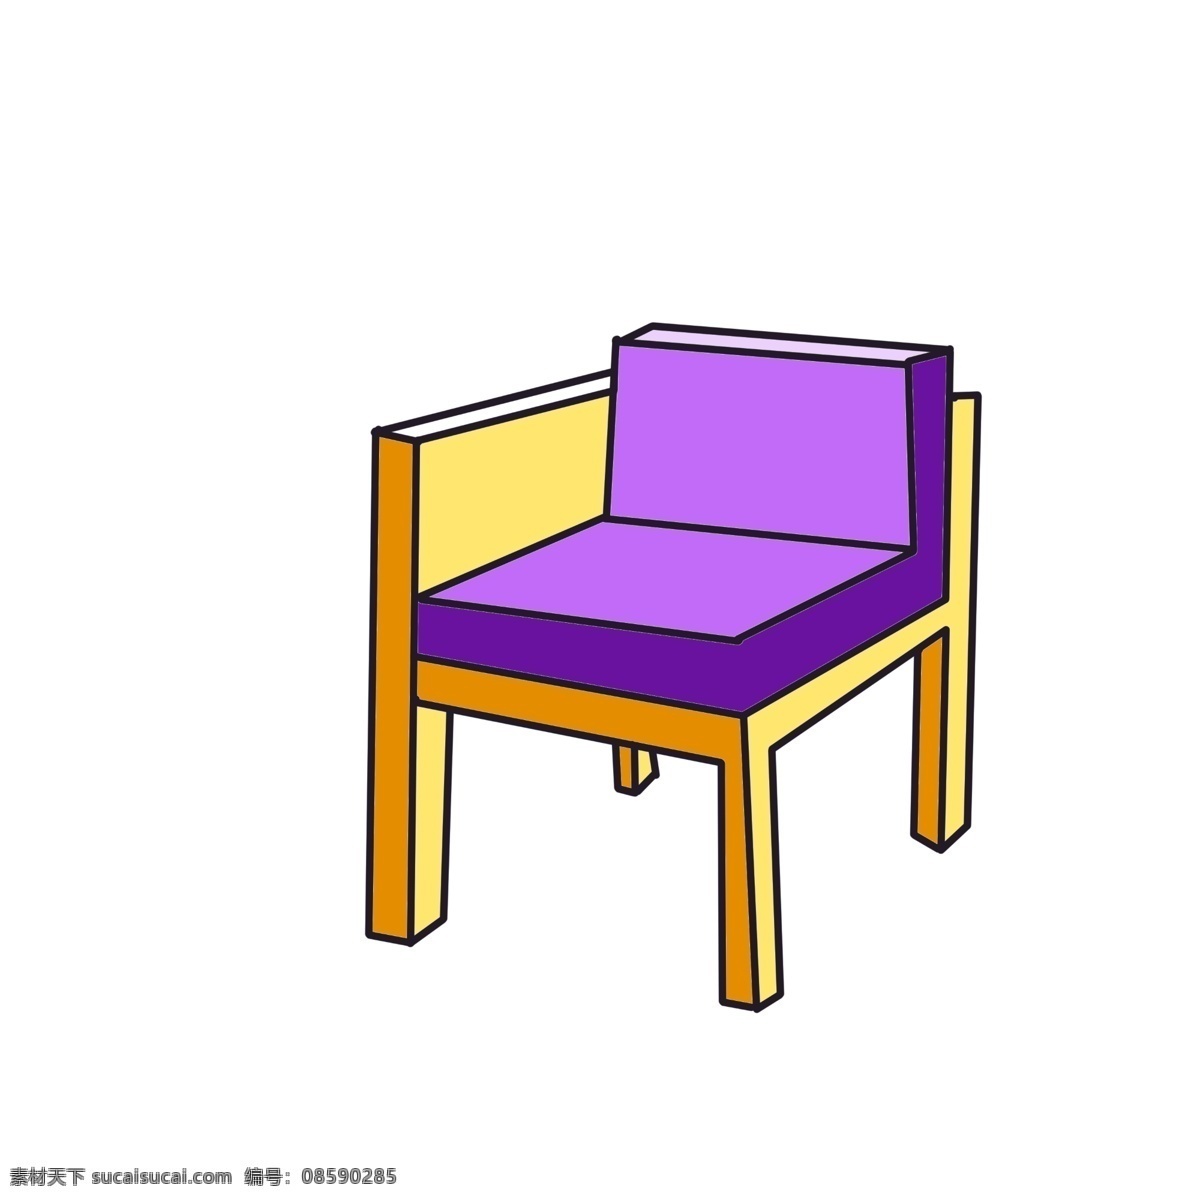 紫色 靠背 沙发 凳 插画 紫色的沙发垫 黄色的凳子 时尚沙发凳 黄色的四脚凳 创意座椅插画 家具家私